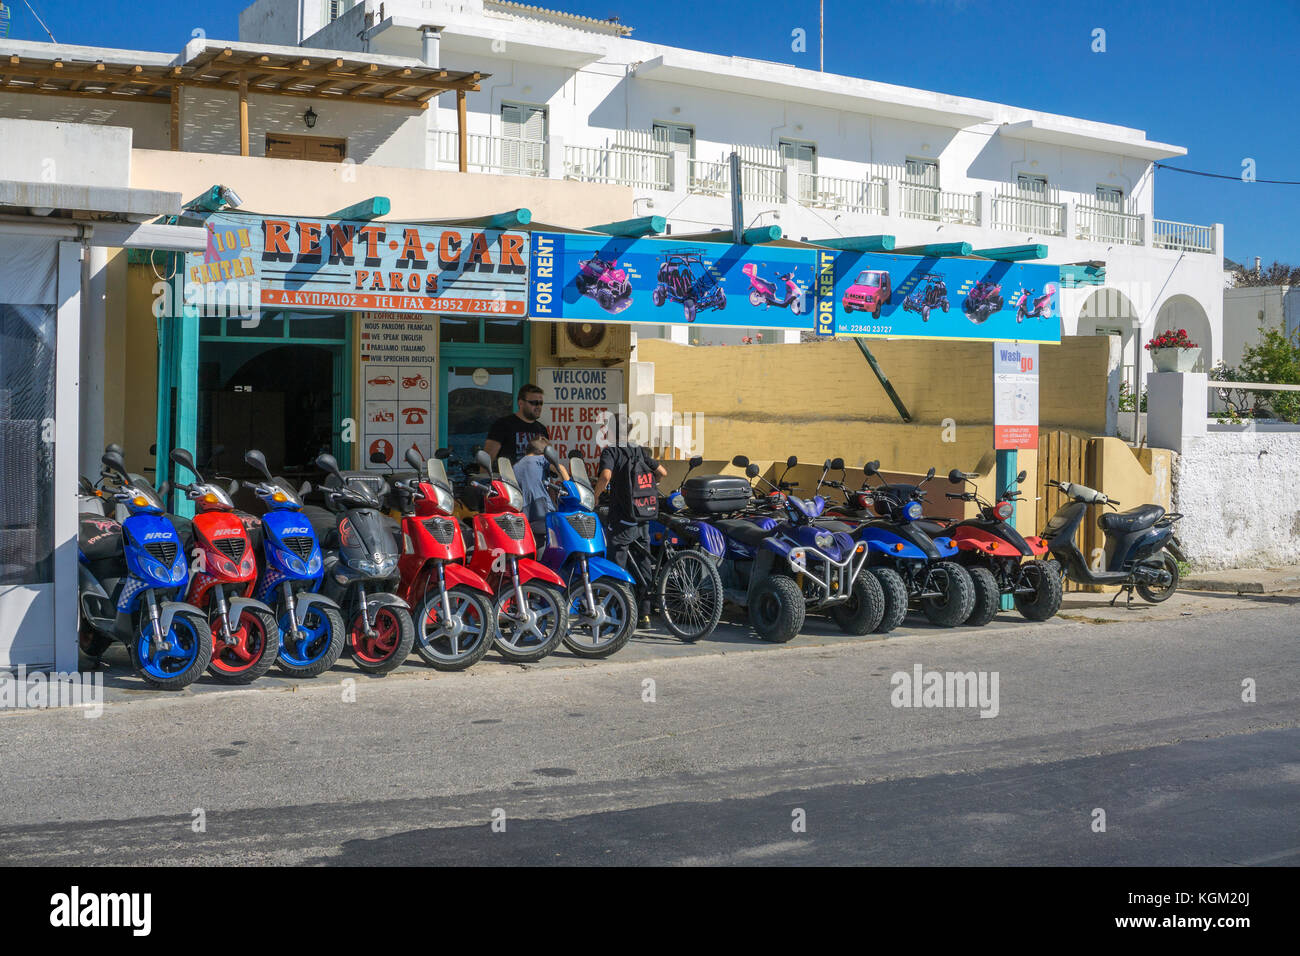 Tienda de alquiler de motos en el puerto de Parikia, la isla de Paros, Egeo, las Islas Cícladas, Grecia Foto de stock